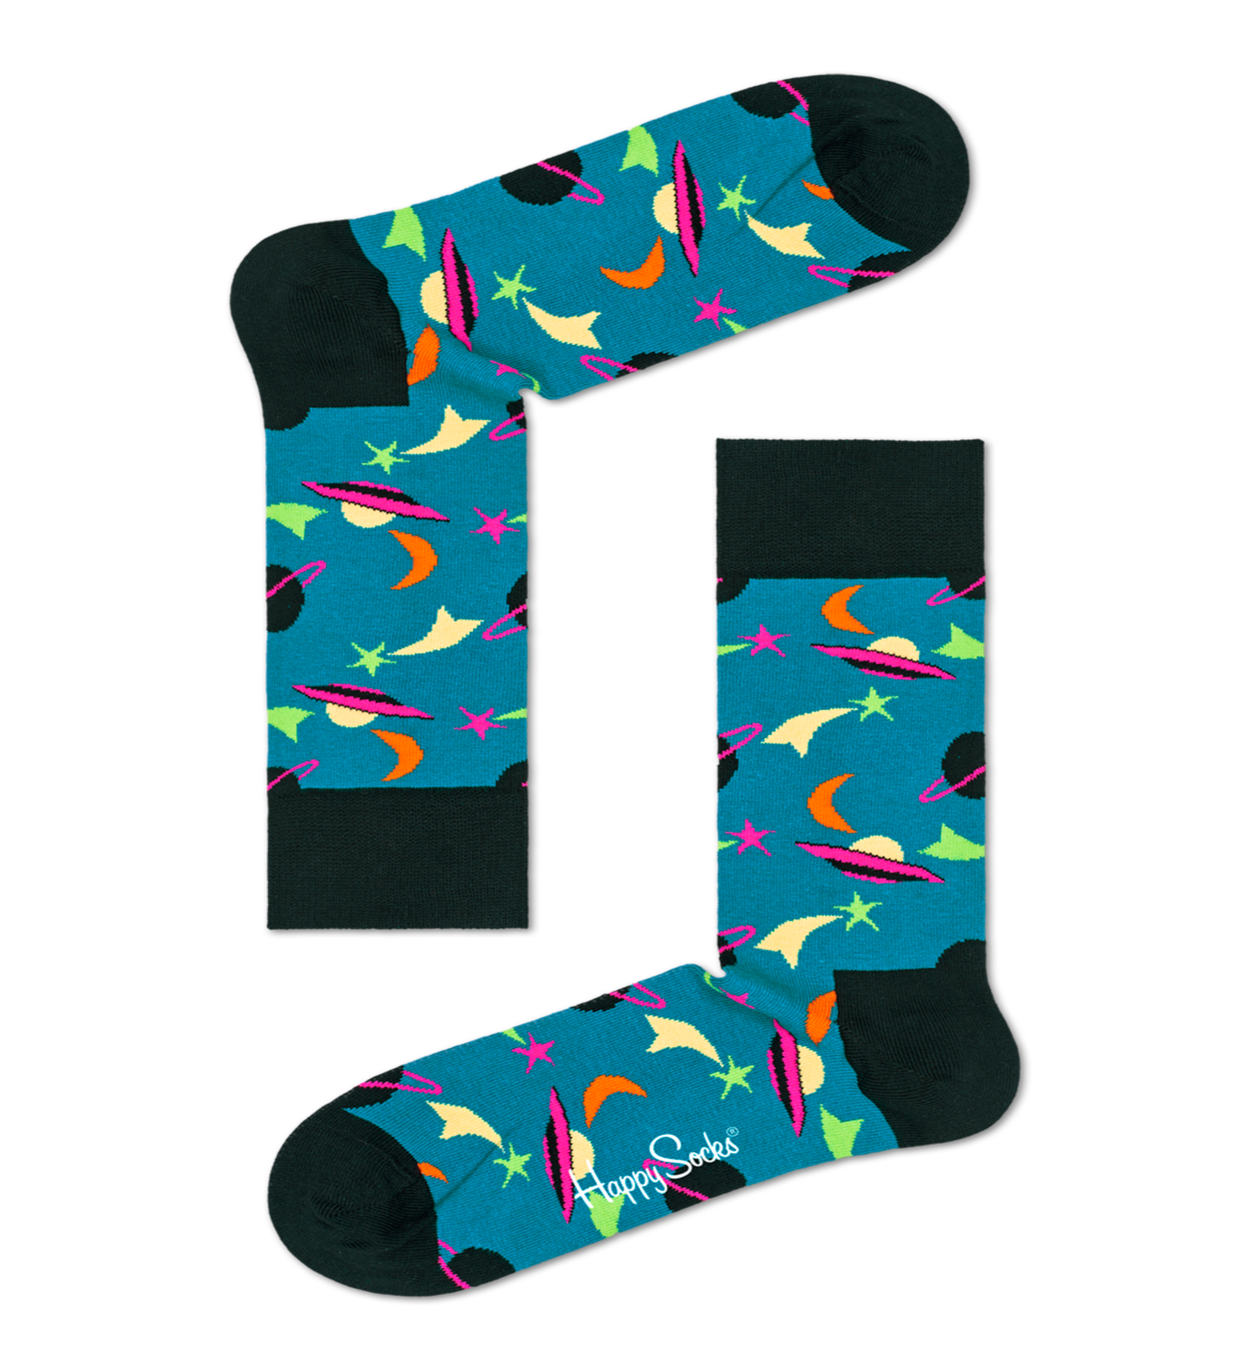 ハッピーソックス 公式オンラインストア スウェーデン発ポップでカラフル おしゃれな男性 女性 子供用靴下ブランド